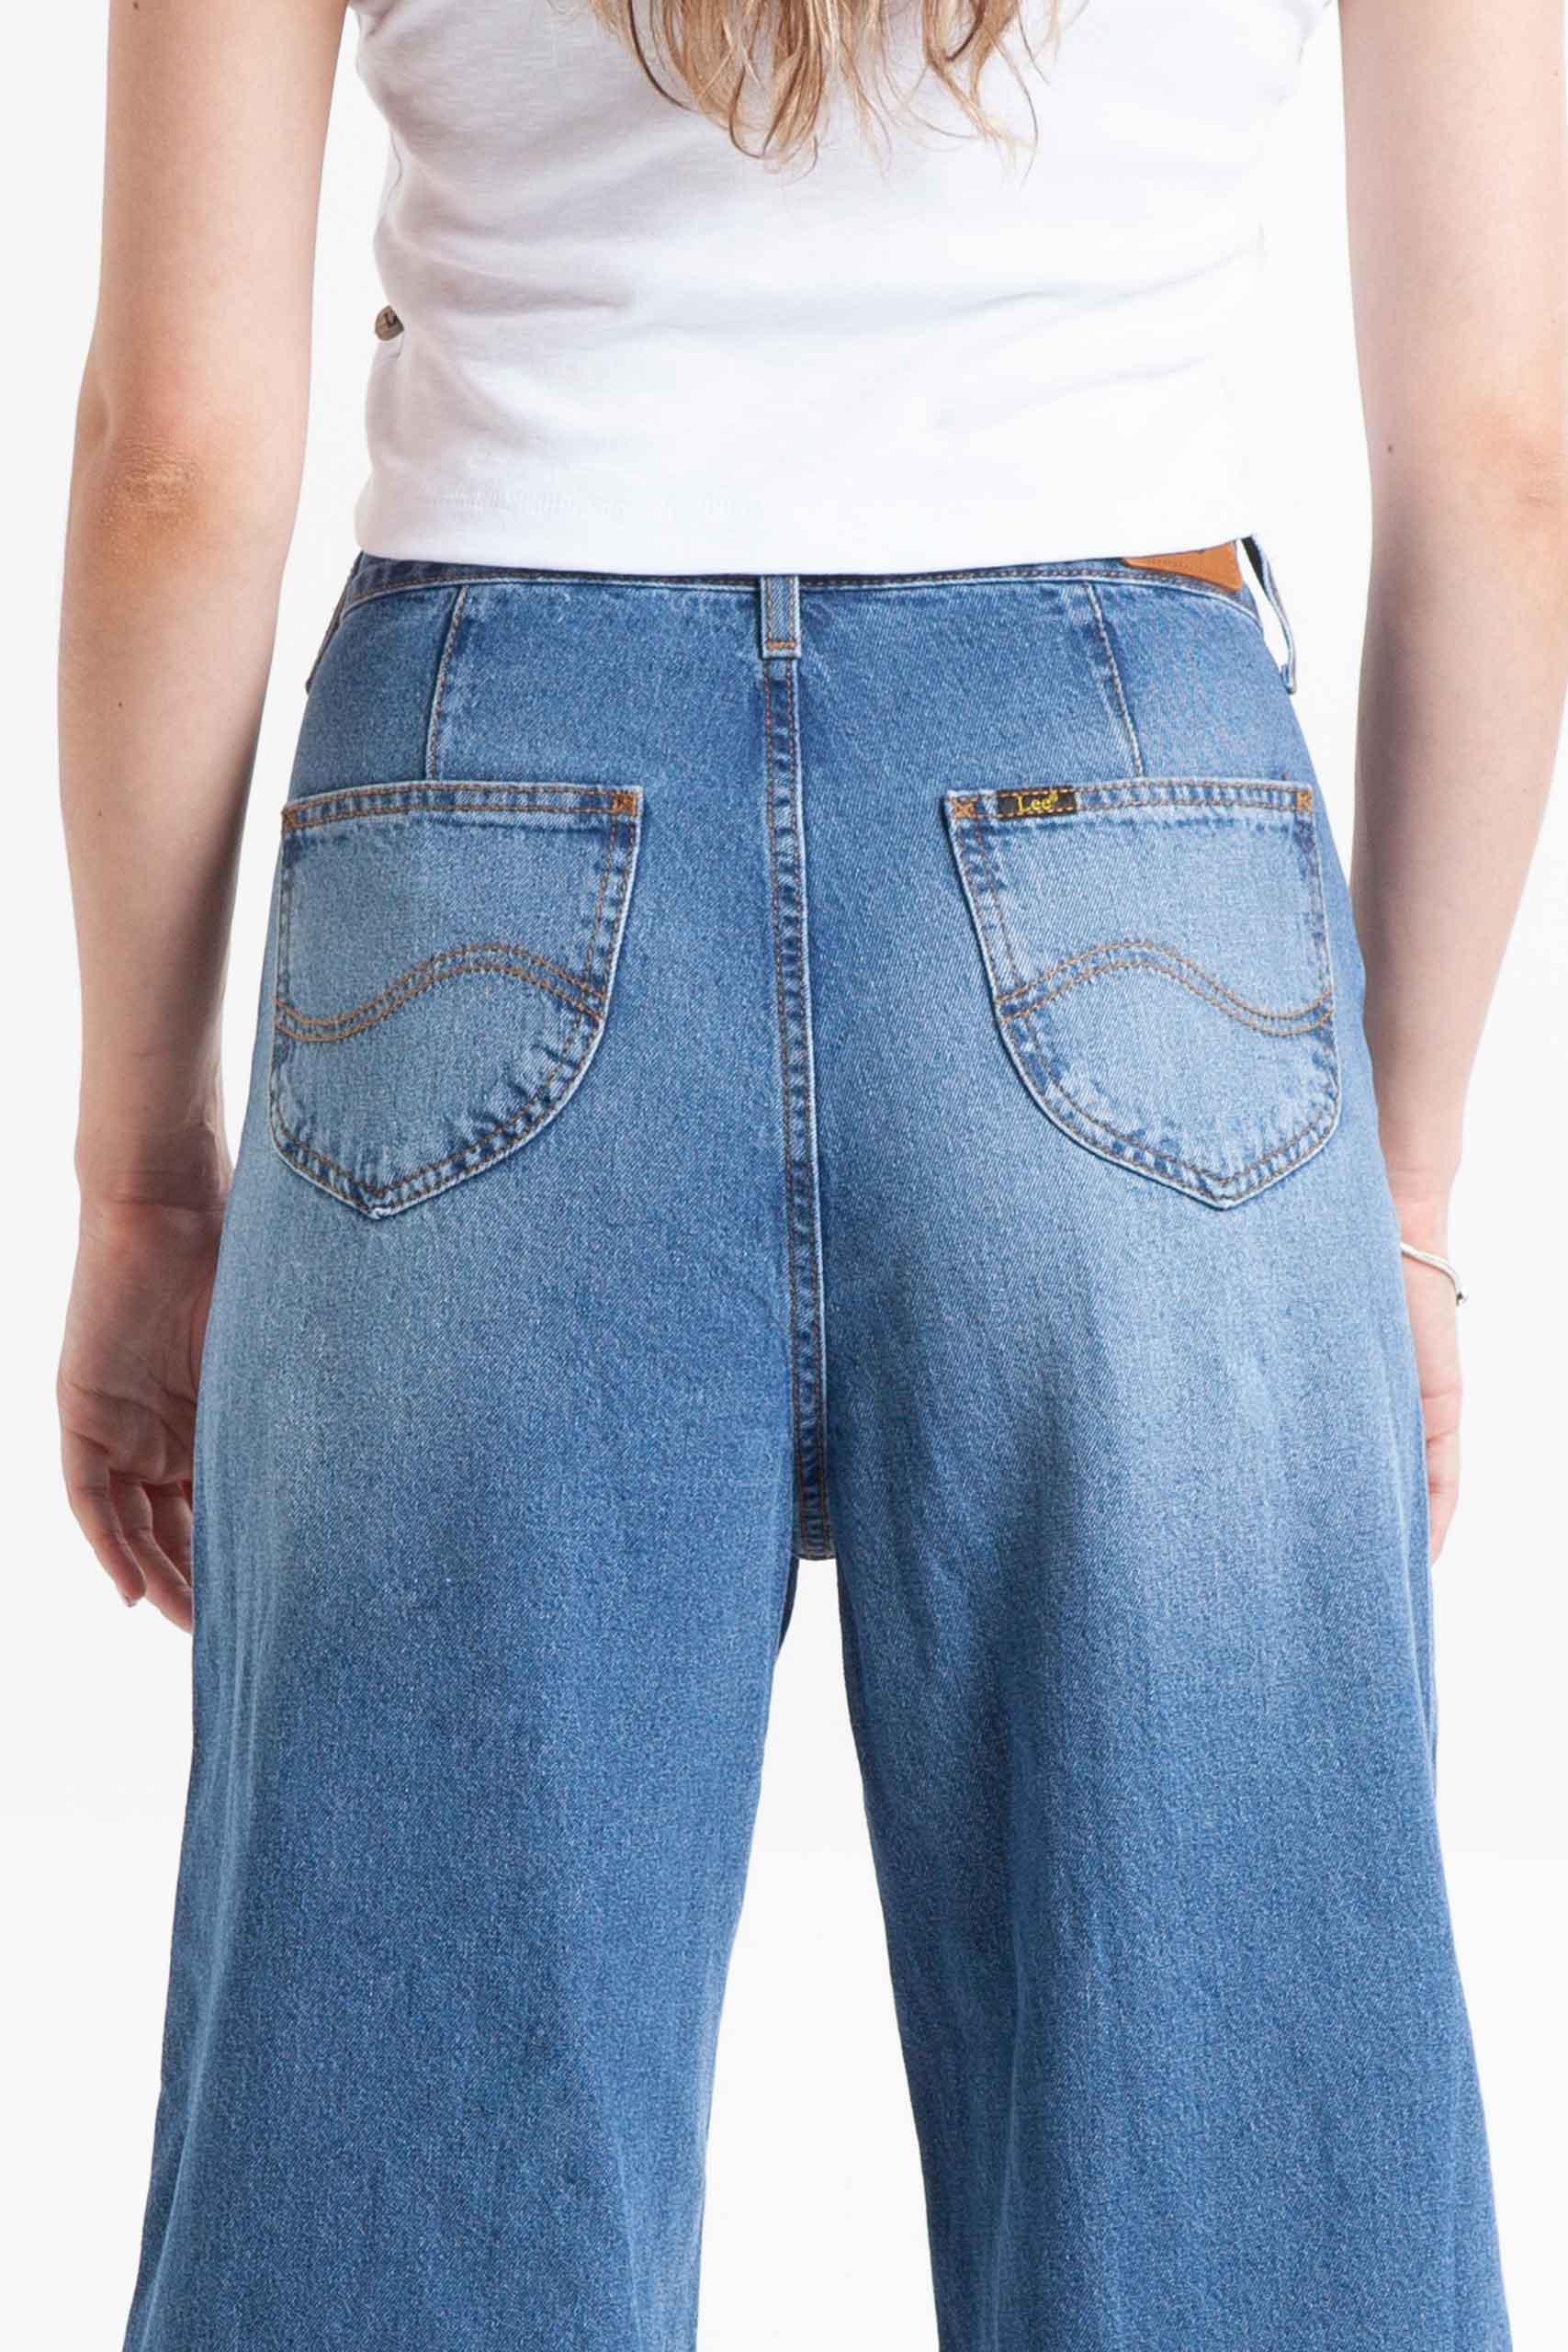 Vista posterior de jean de color azul de pierna ancha con bolsillos de marca lee